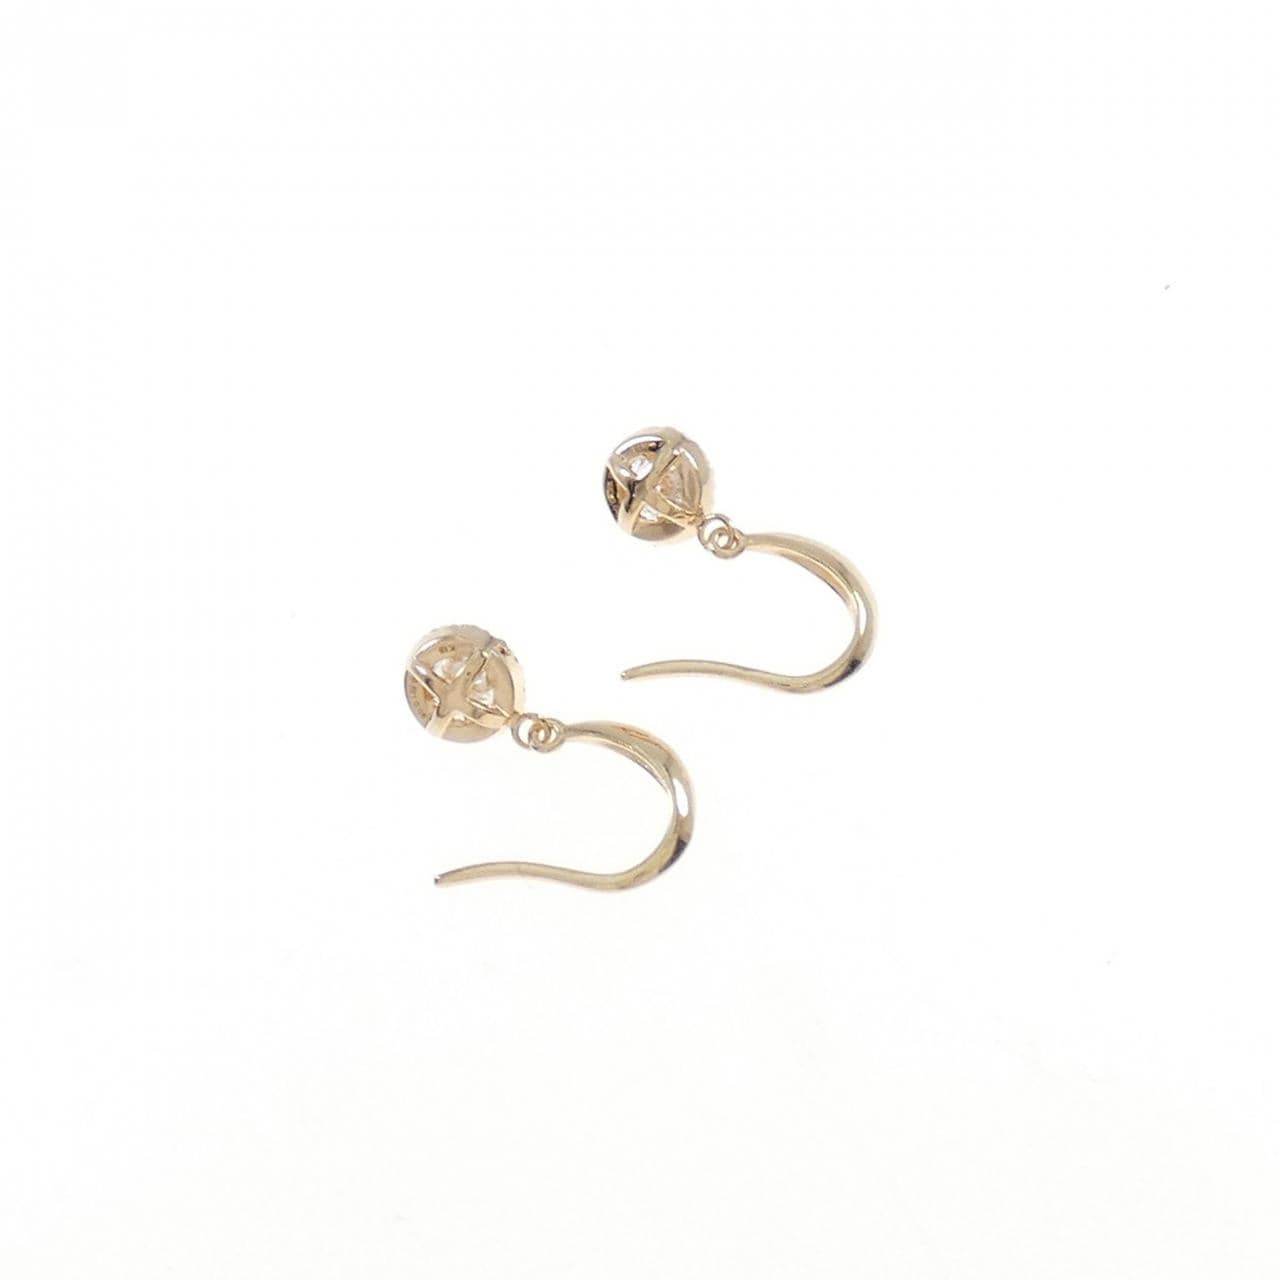 K18PG Diamond earrings 0.503CT